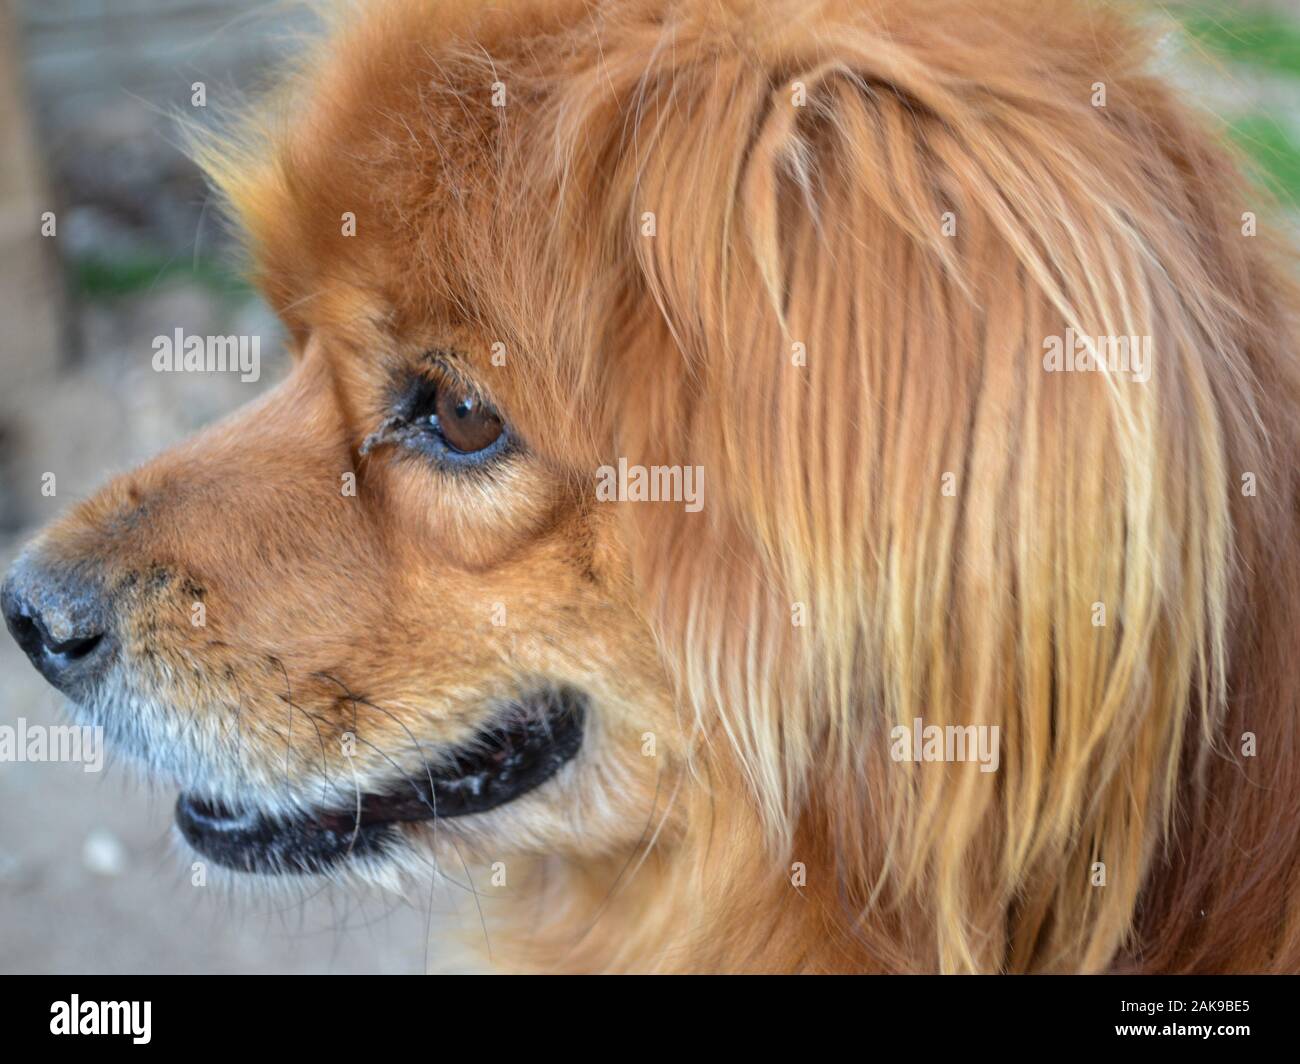 Gros plan de la tête de chien mixte de race pékinoise, Canis lupus familiaris Banque D'Images